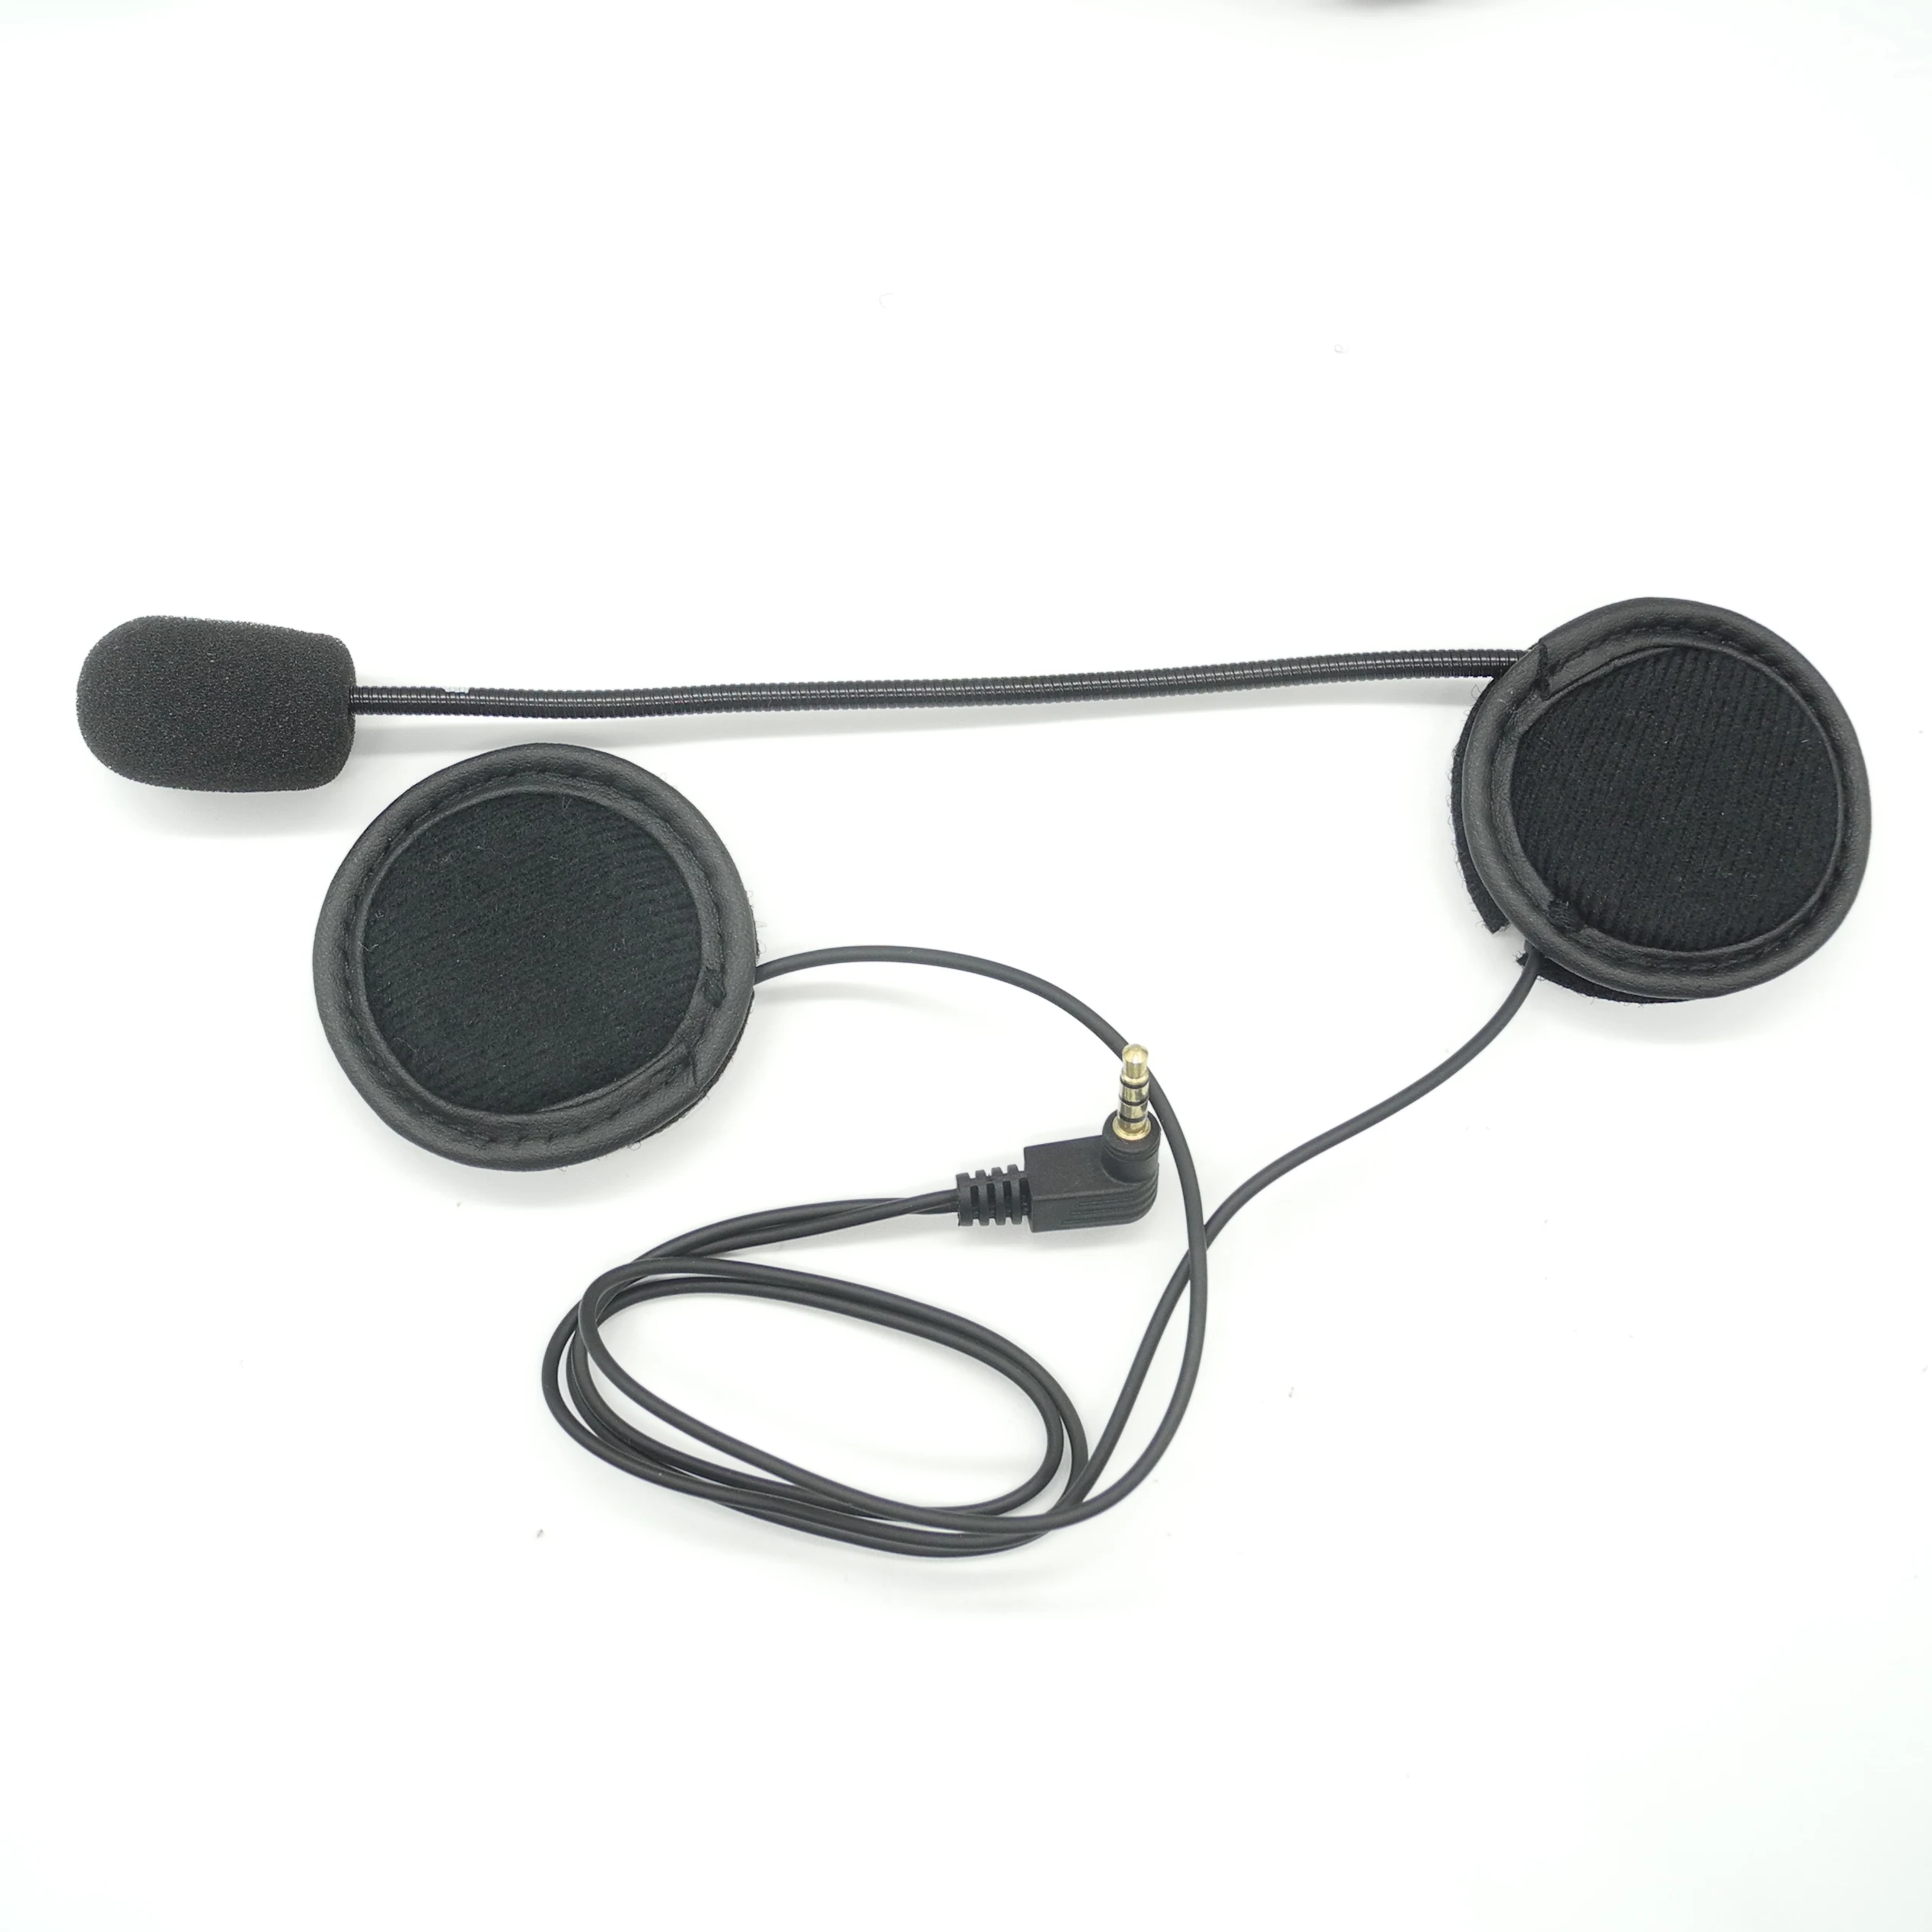 1 шт Bluetooth Интерком 3,5 мм проводной микрофон наушники для V6-1200 м Мотоциклетный Интерком Intercomunicadores Мото шлем гарнитура